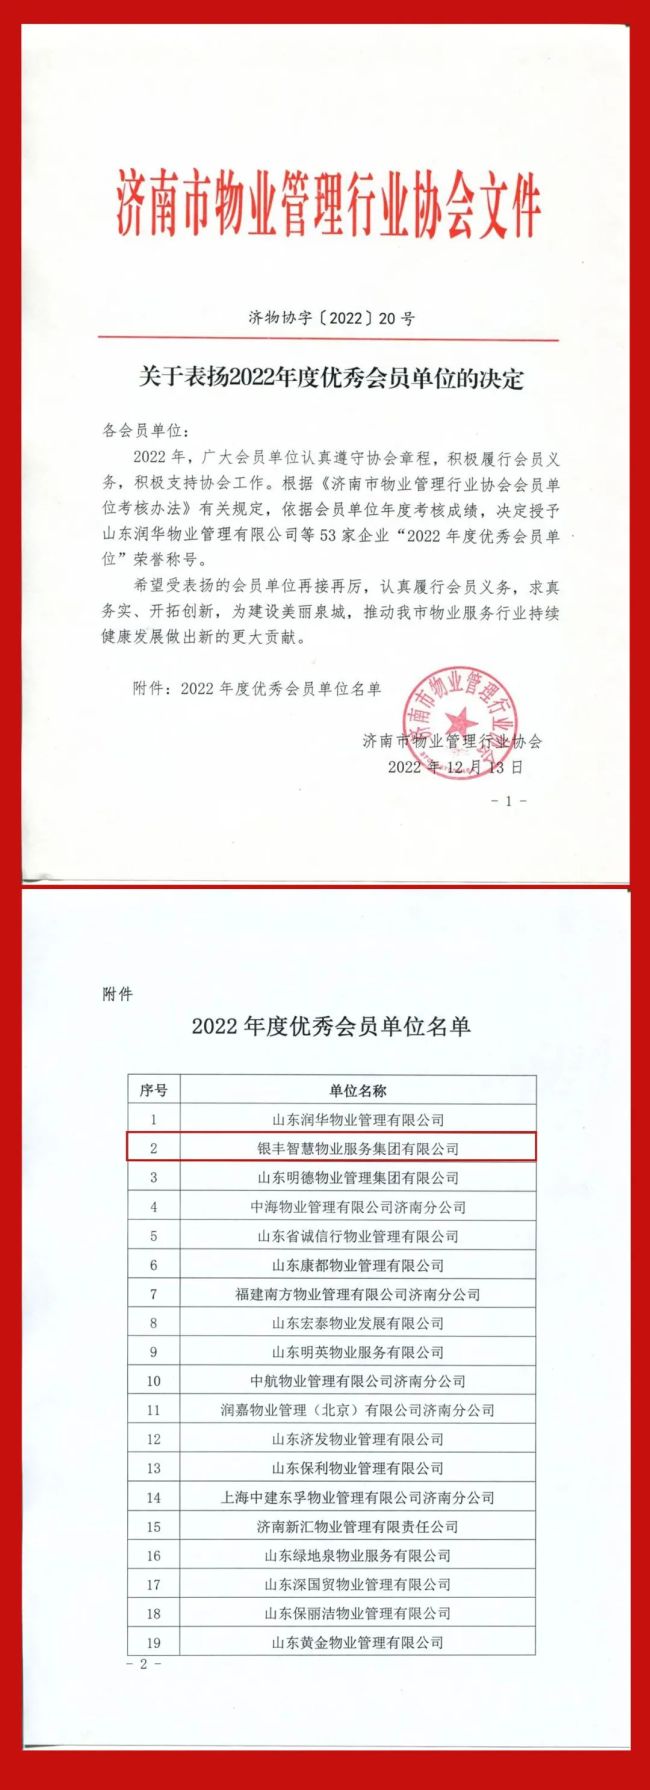 银丰物业荣获济南市物业管理行业协会“2022年度优秀会员单位”等多项荣誉